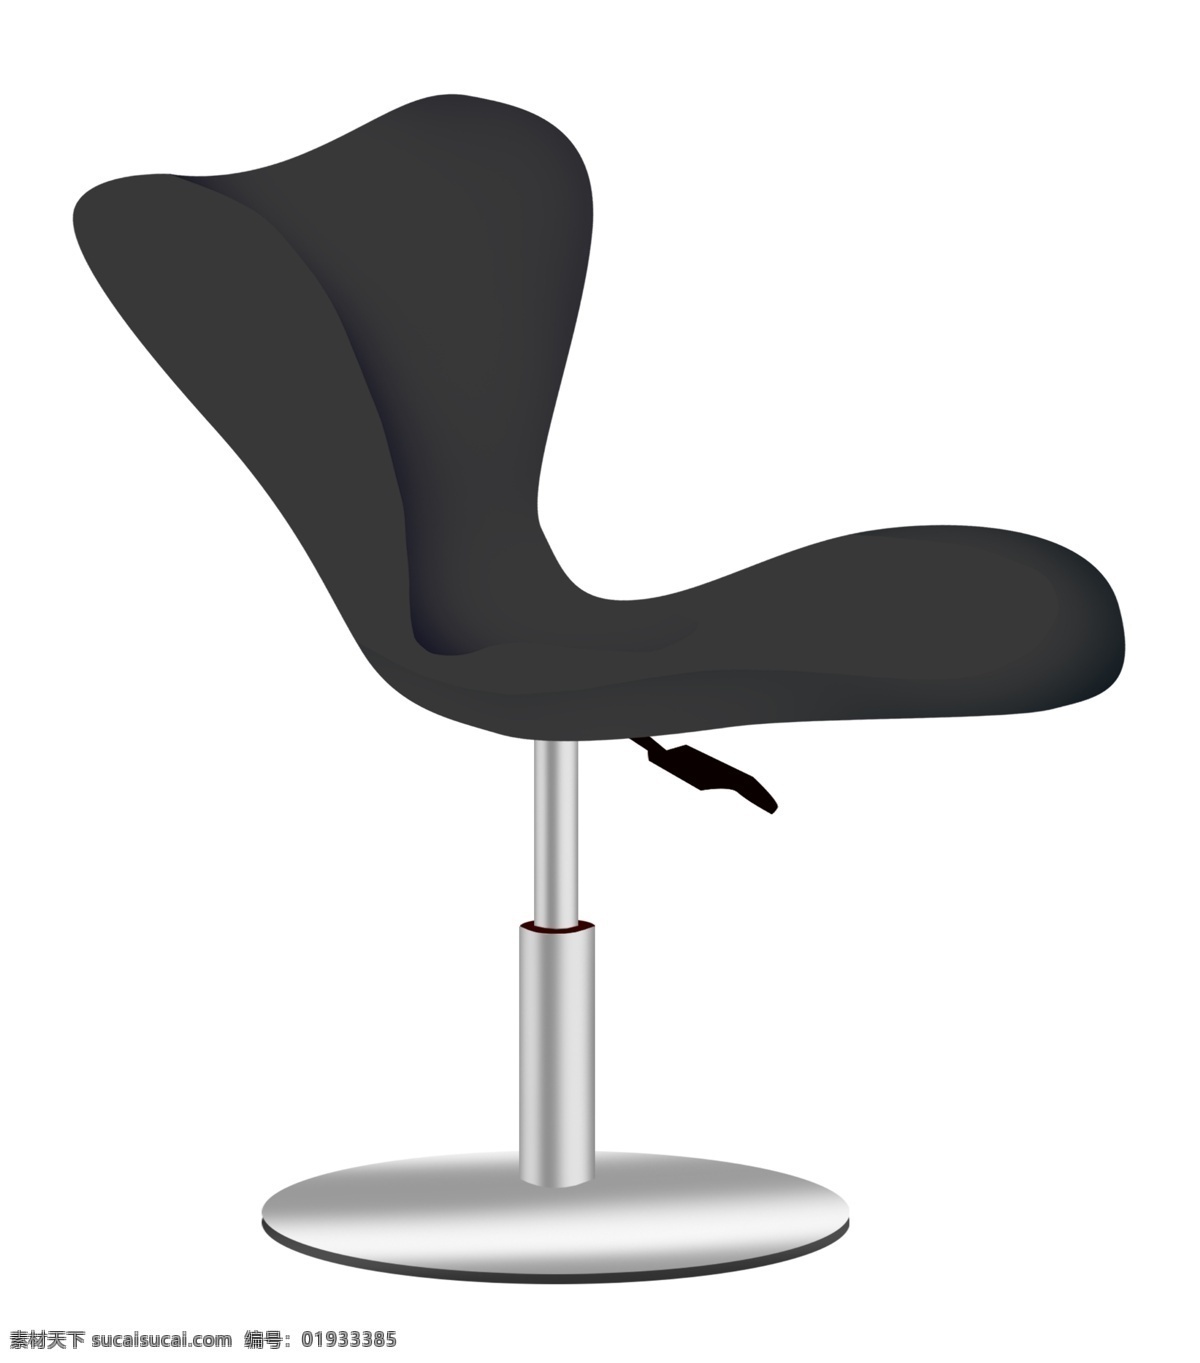 黑色 升降 椅子 插画 黑色的椅子 卡通插画 椅子插画 座椅插画 木质座椅 实木座椅 不锈钢底座